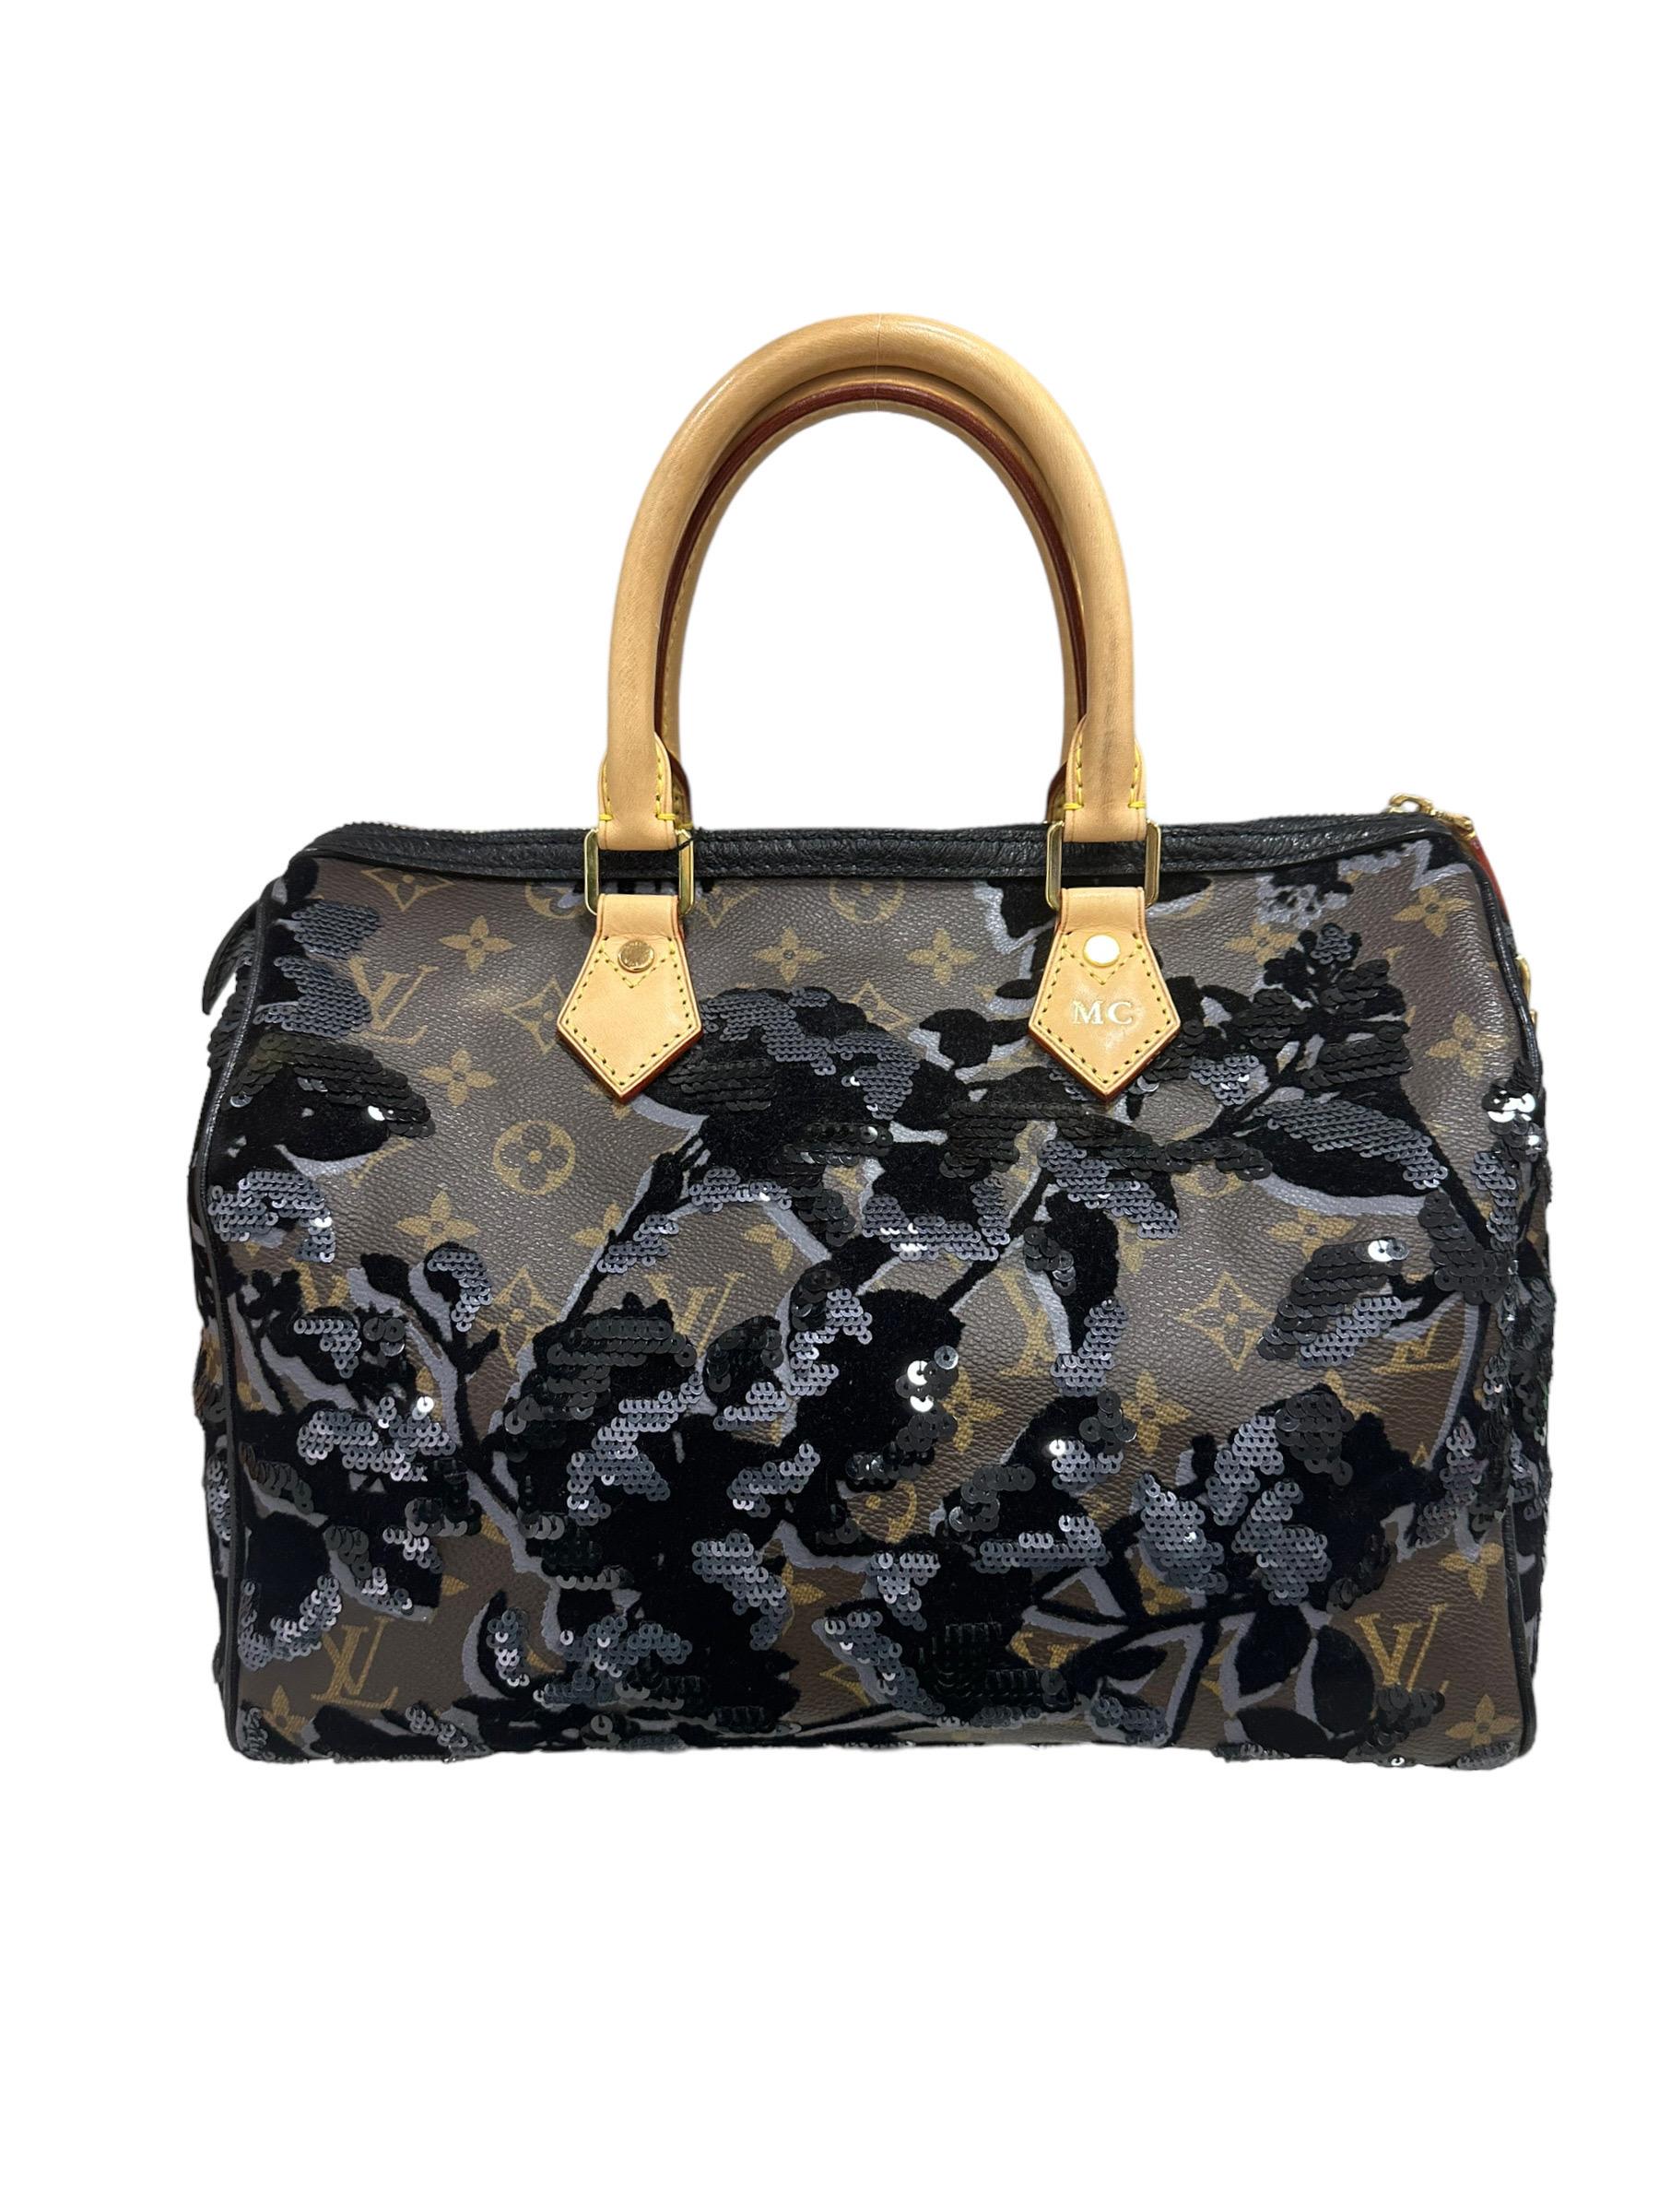 2011 Louis Vuitton Speedy 30 Fleur De Jais Limited Edition Top Handle Bag 1